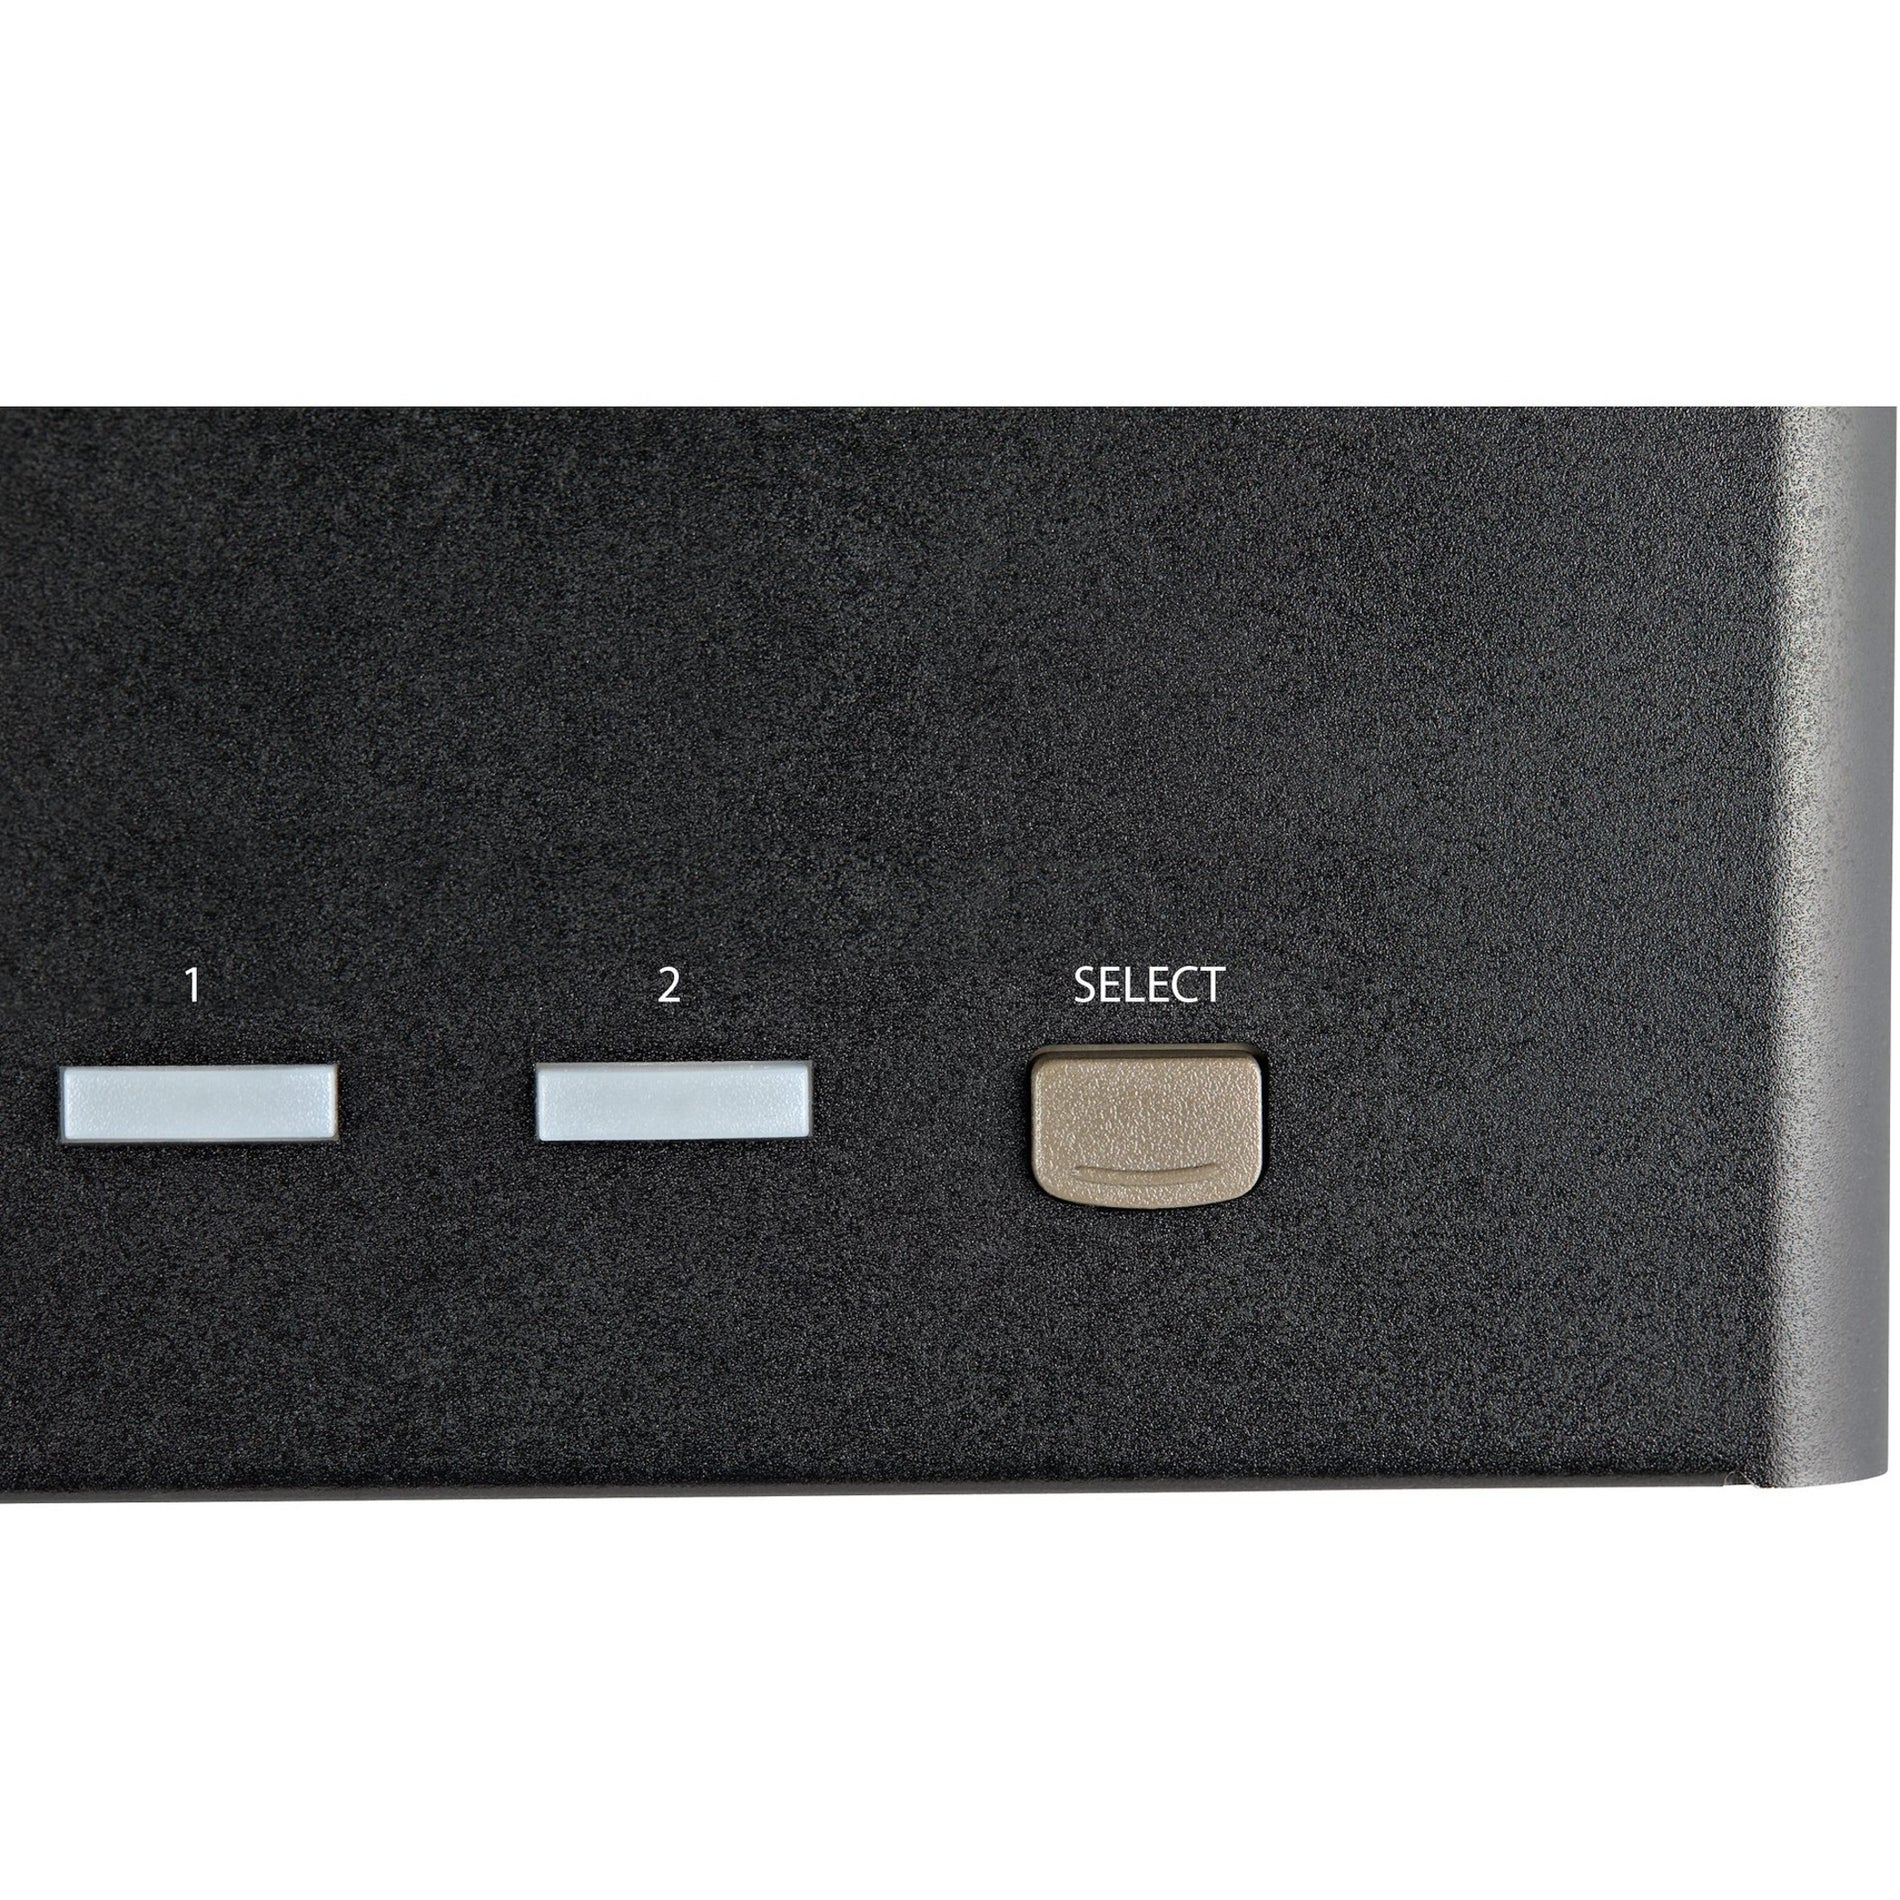 StarTech.com Conmutador KVM de 2 puertos para cuatro monitores DisplayPort 4K 60Hz UHD HDR Conmutador KVM DP 1.2 Concentrador USB 3.0 de 2 puertos 4x USB HID Audio Tecla de acceso rápido